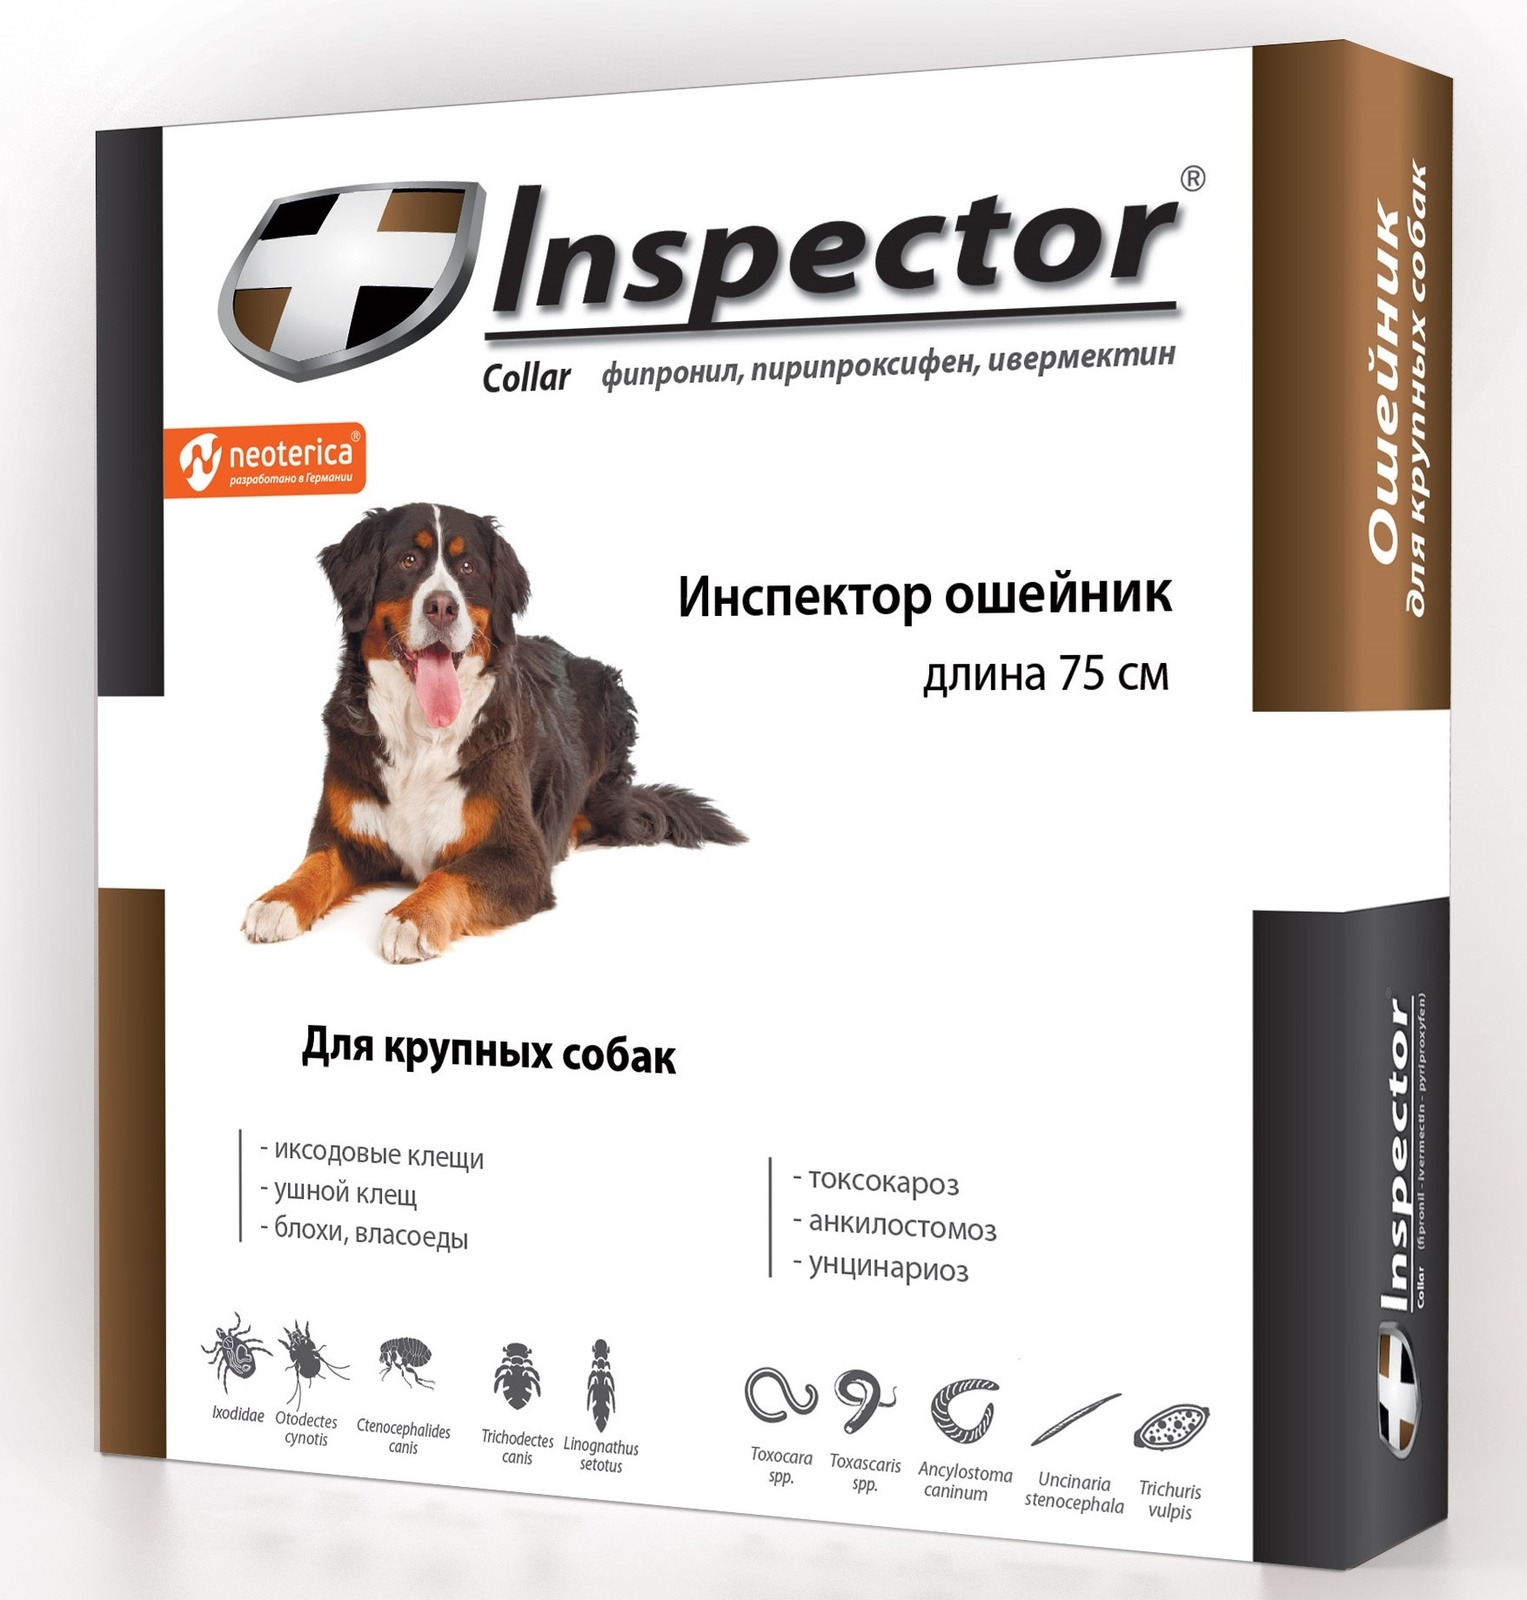 Inspector Inspector ошейник от клещей, насекомых, глистов для крупных собак, 75 см (80 г)